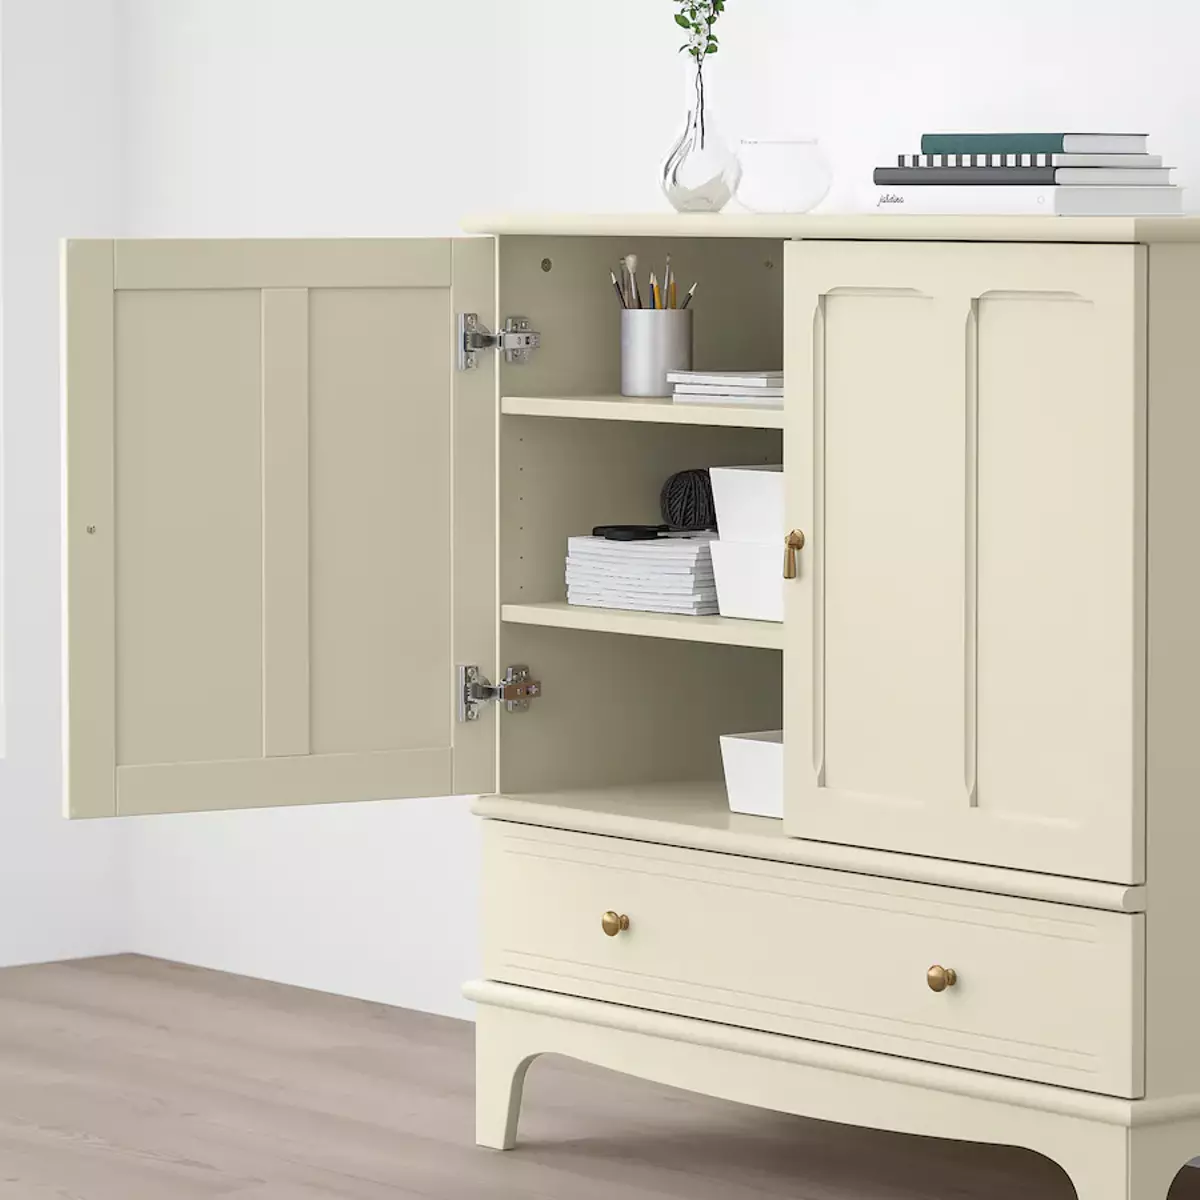 Cómodas Ikea | El mueble Lommarp tiene unas líneas clásicas que se adaptan a cualquier estilo